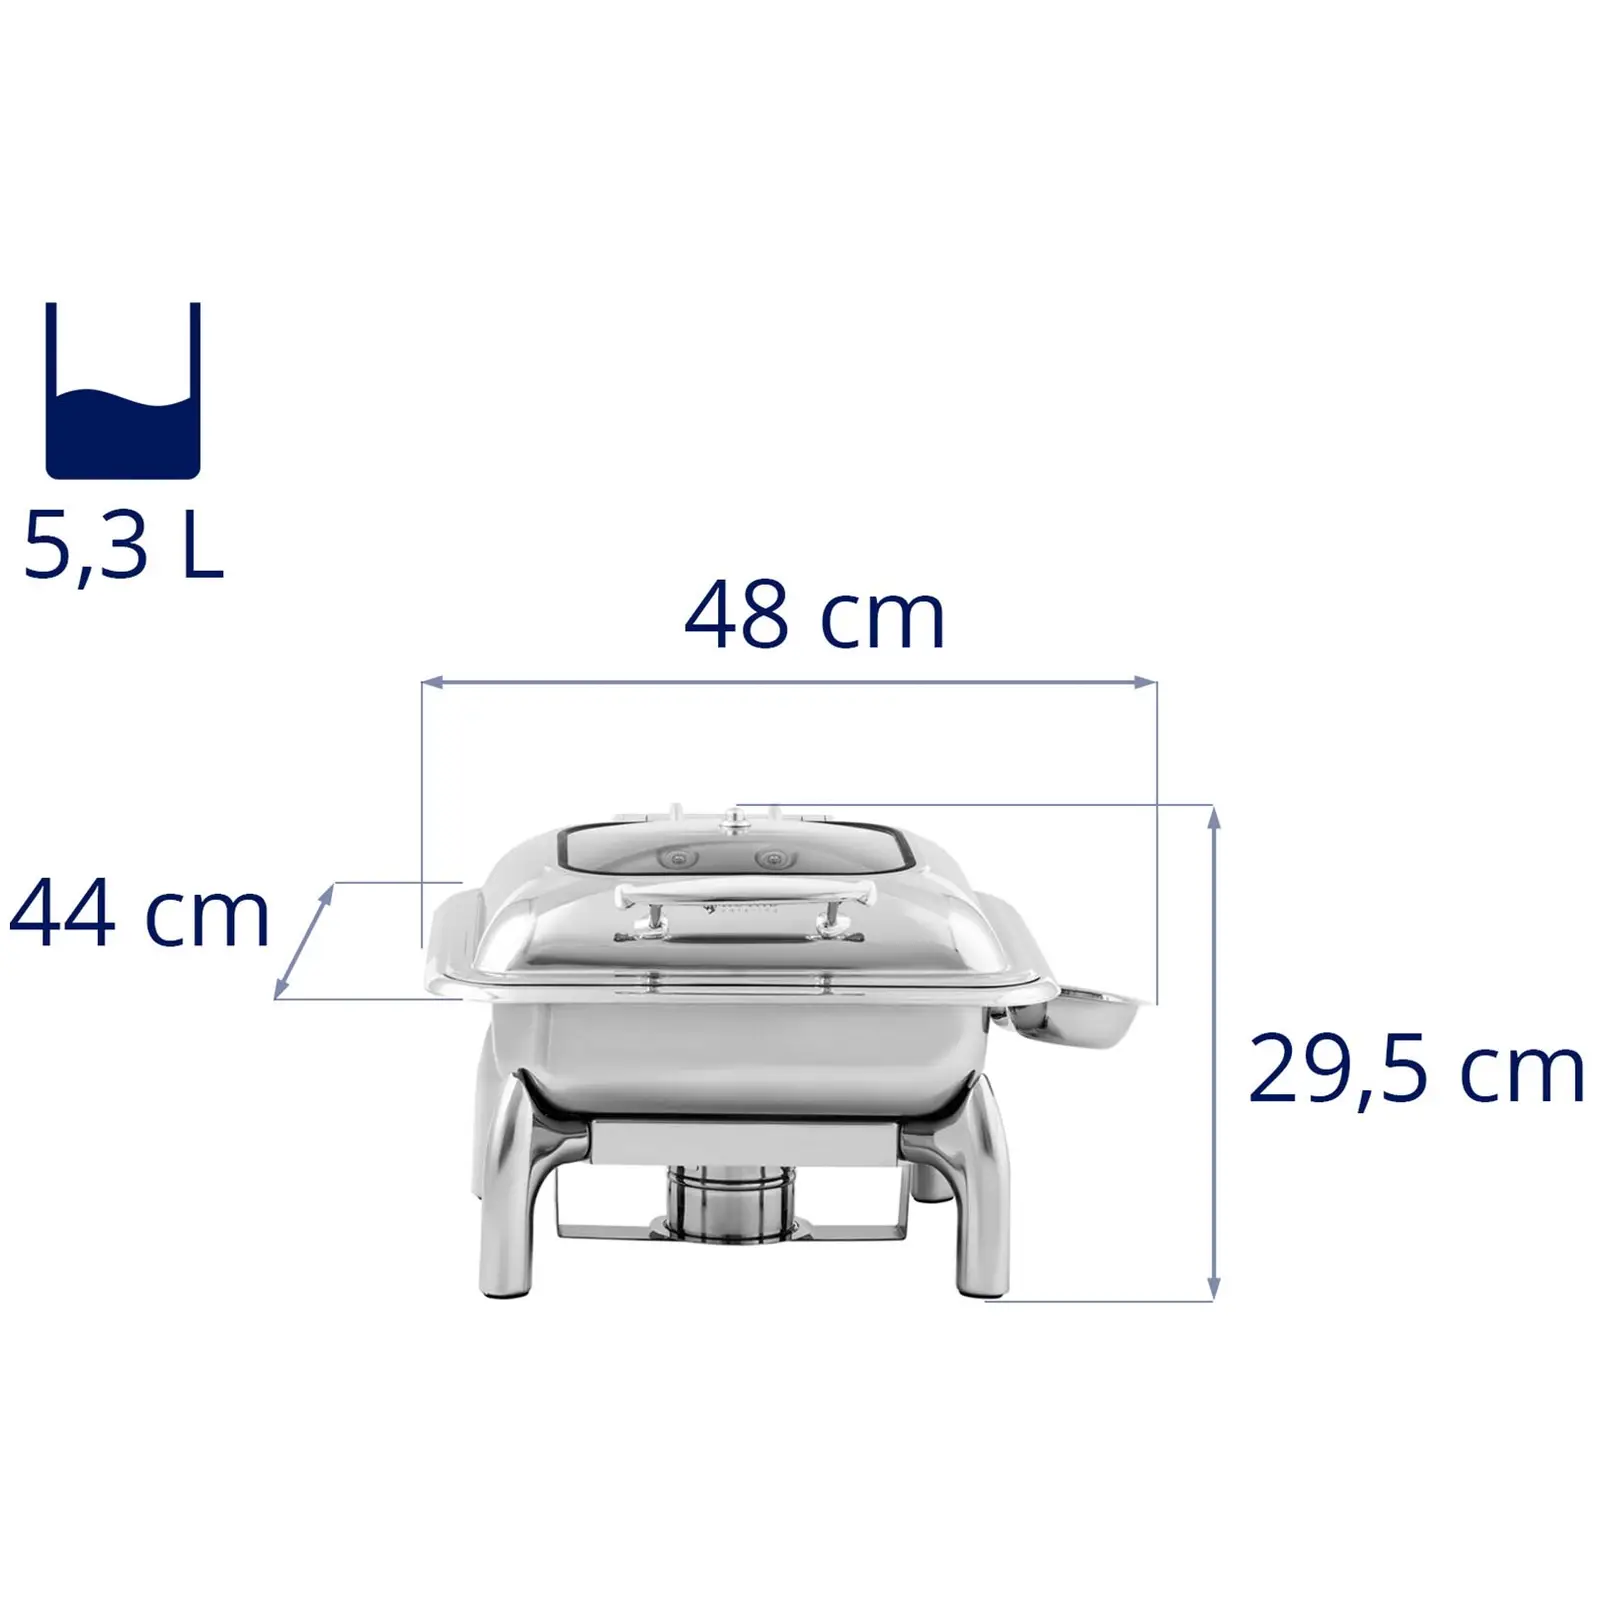 Chafing dish - GN 2/3 - Royal Catering - 5,3 l - 1  x palivový článek